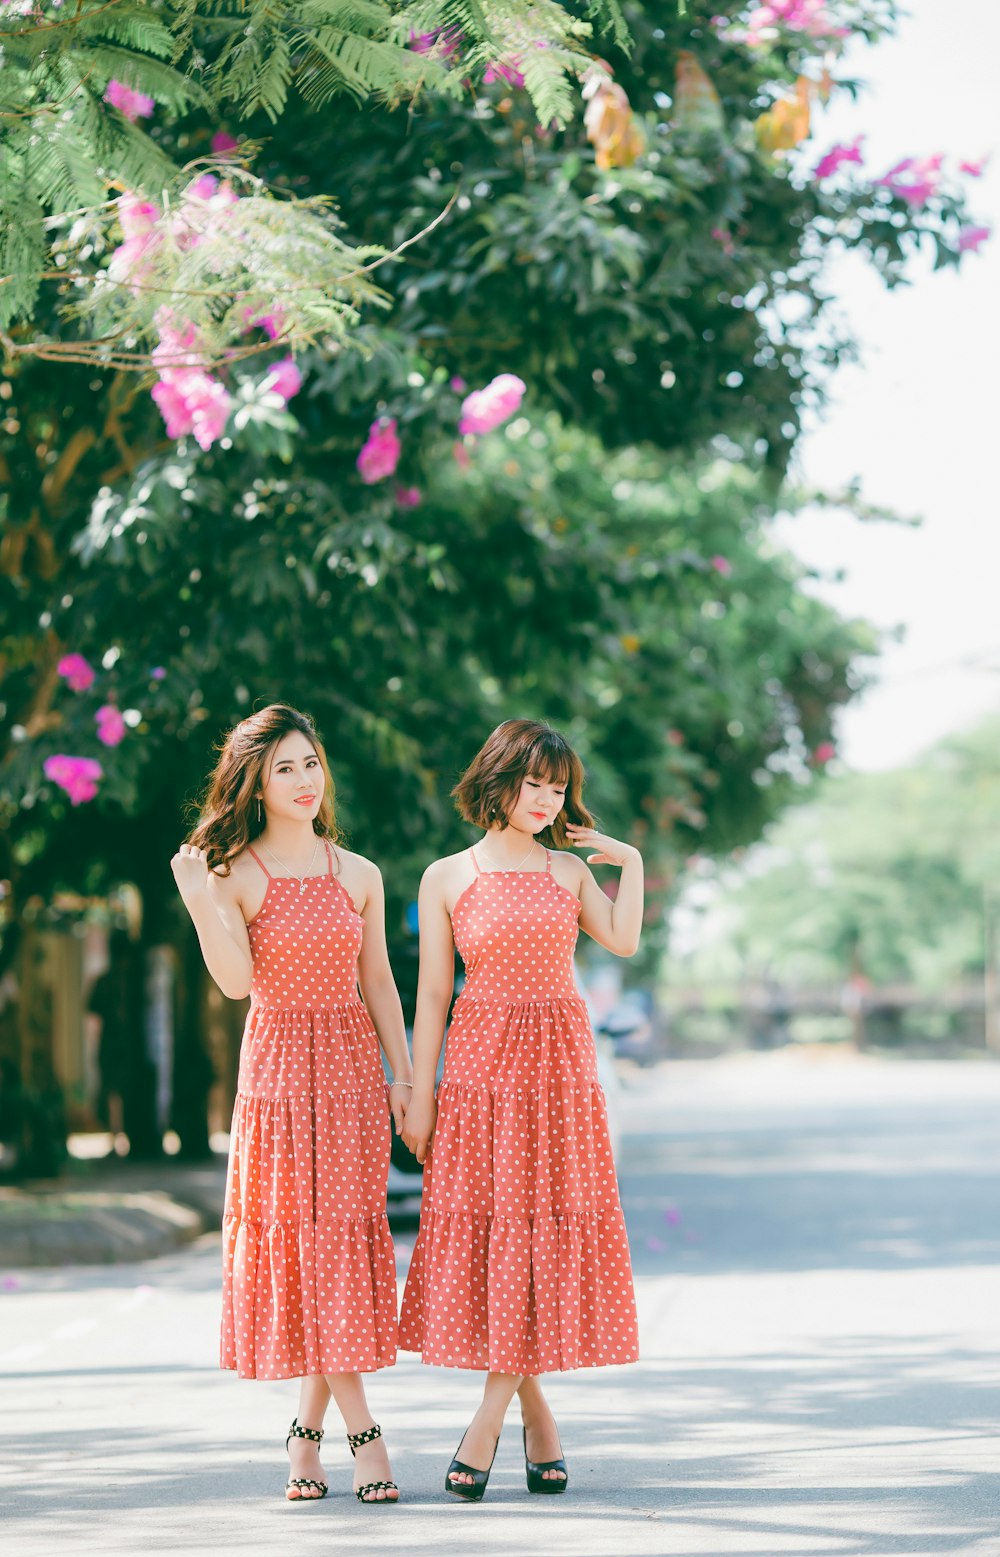 赤と白の水玉模様のドレスを着た2人の女性が、昼間、ピンクの花びらの花のそばの道路に立っている